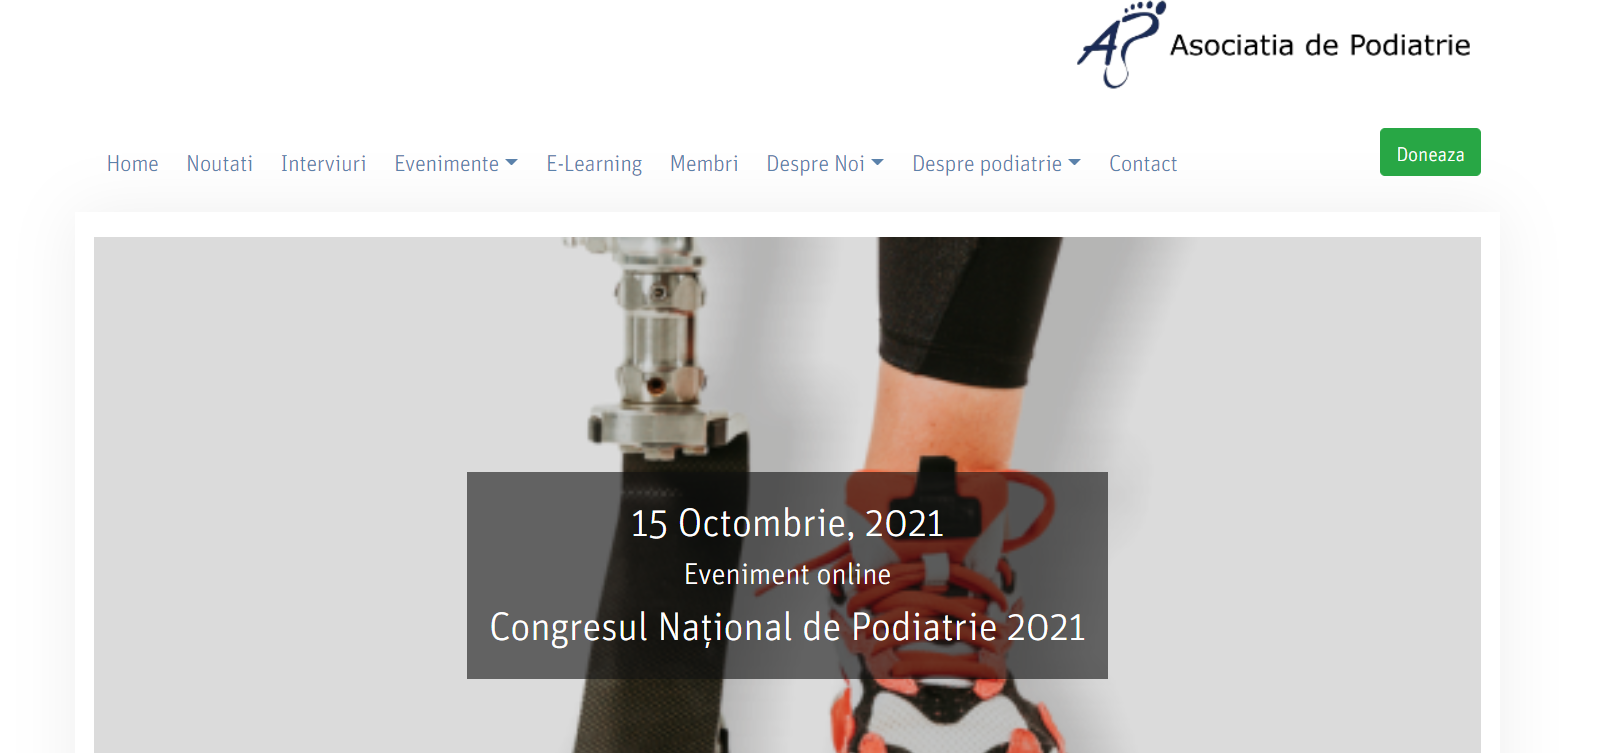 Congresul Național de Podiatrie, online, pe 15 octombrie